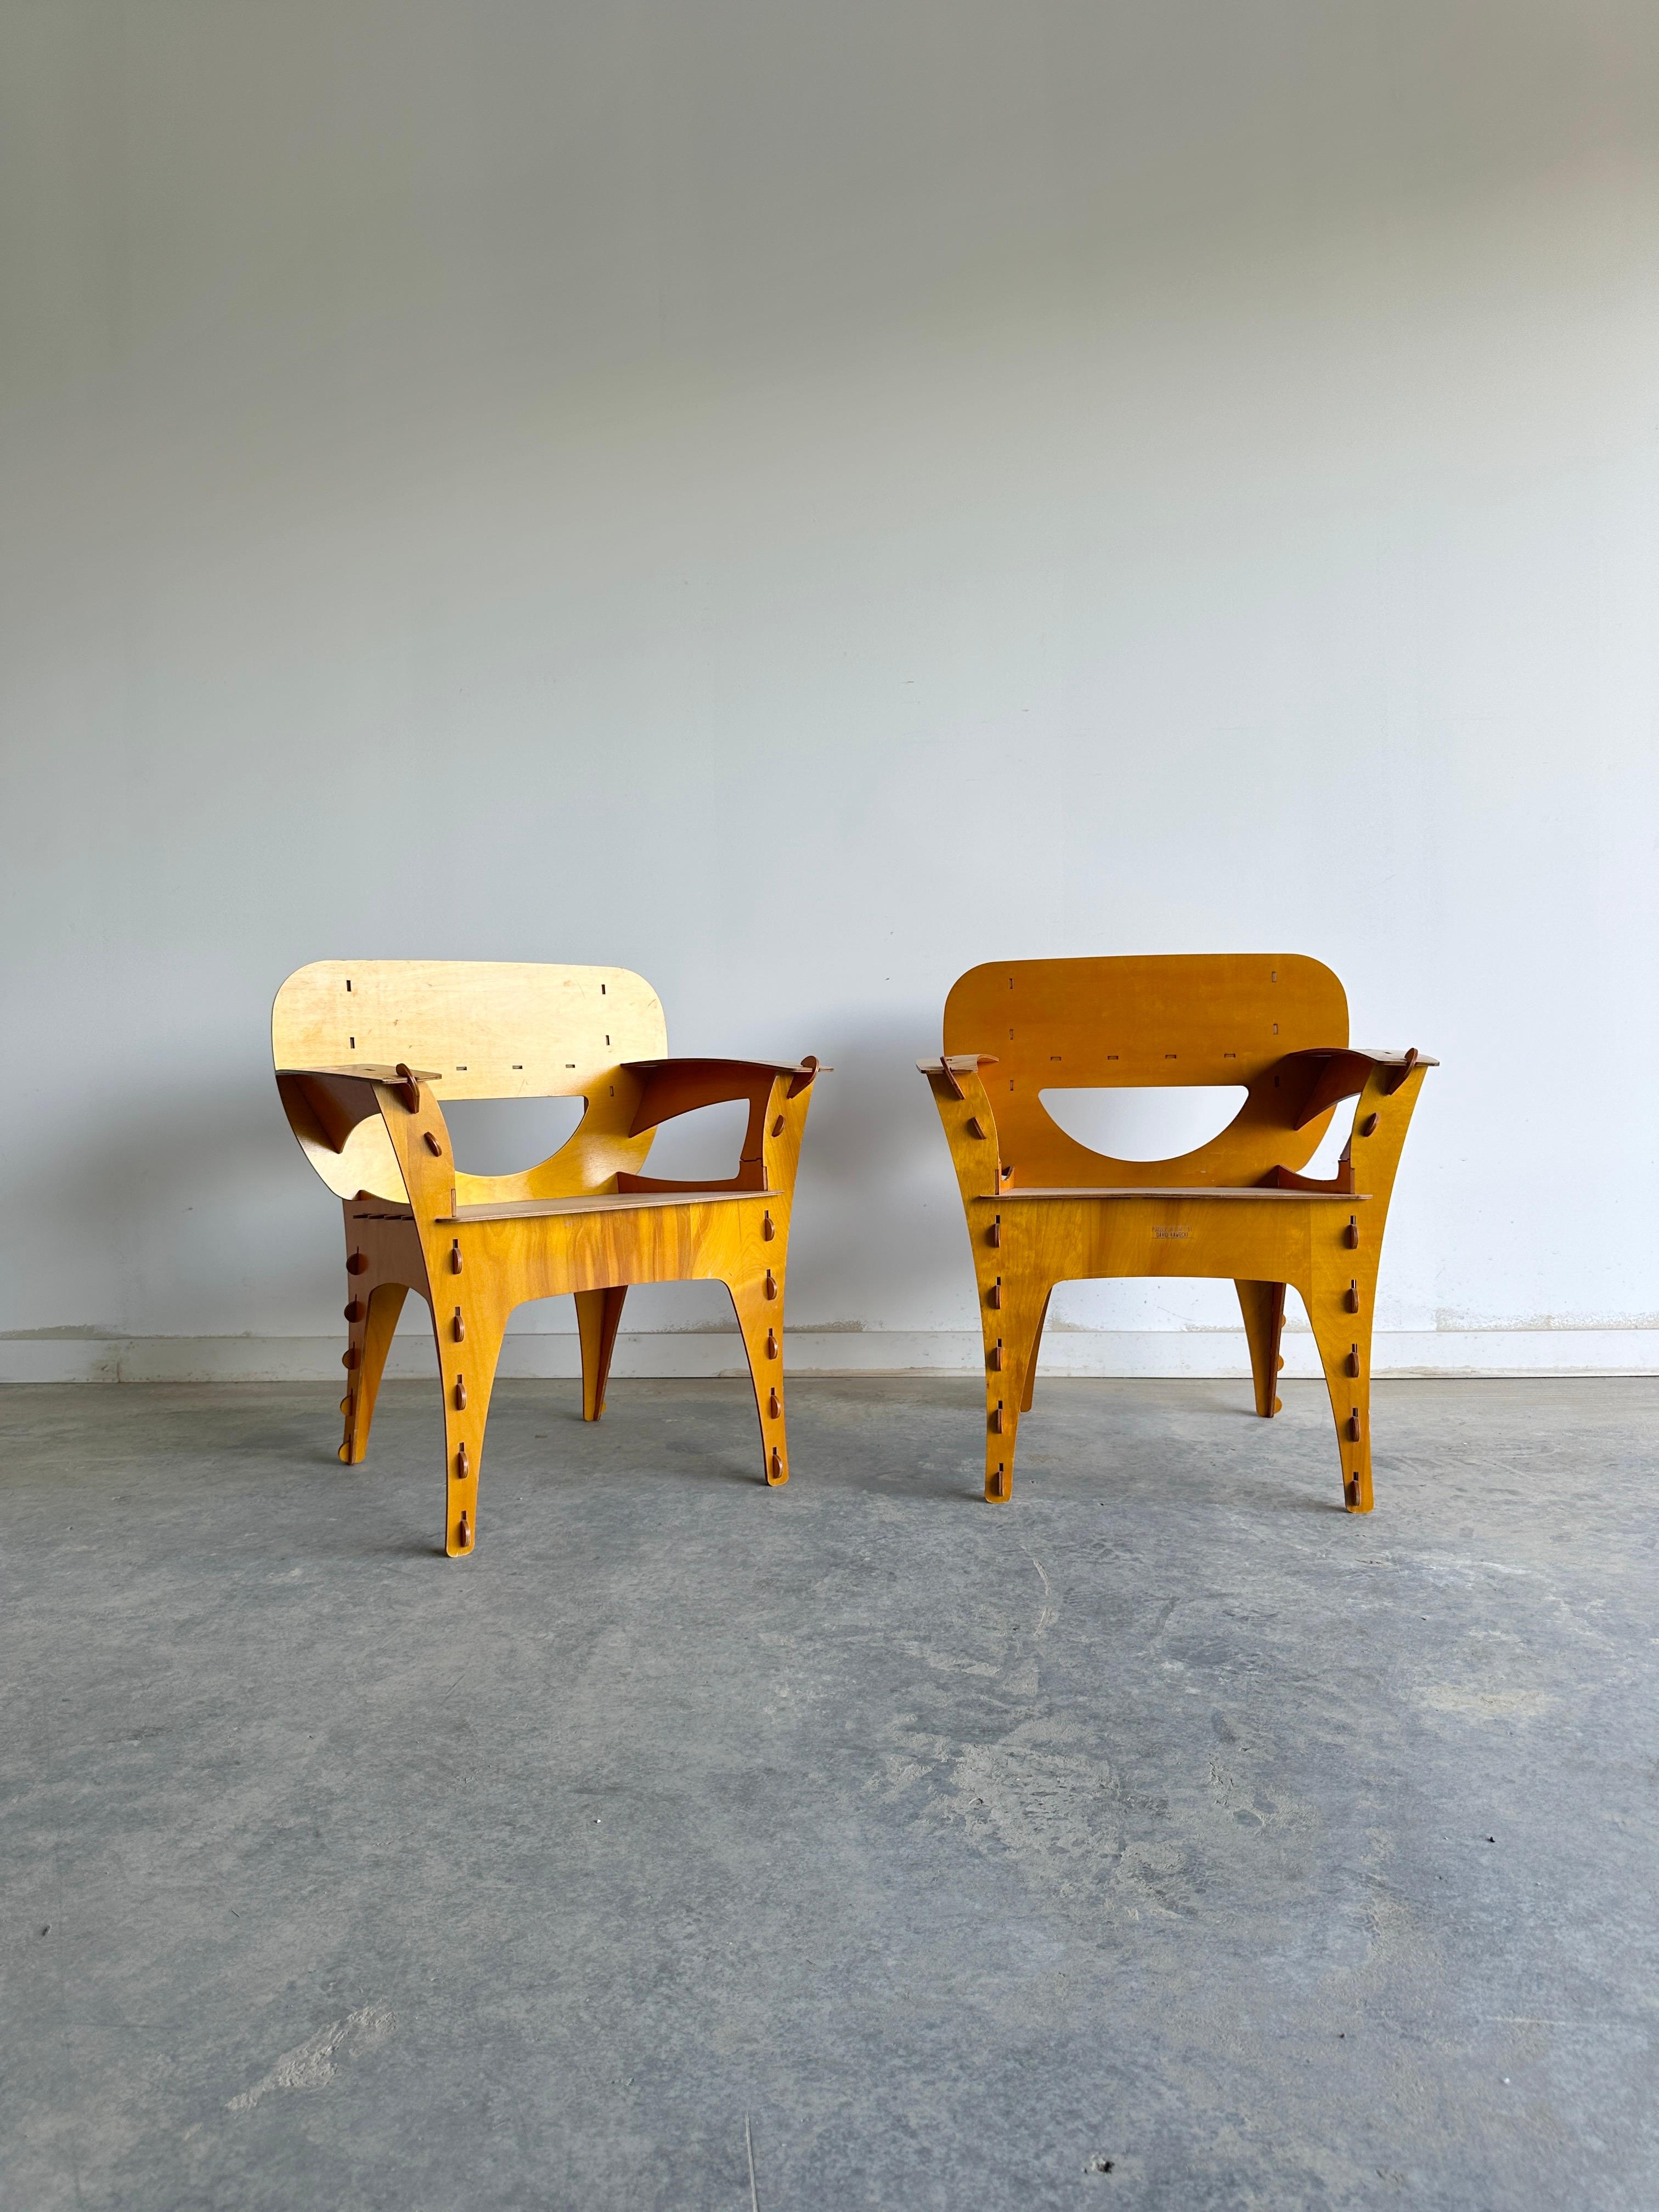 David Kawecki ist ein Designer, der einzigartige und verspielte Stühle entwirft, die wie Puzzles aussehen. Seine Puzzlesessel bestehen aus lasergeschnittenen Sperrholzteilen, die ohne Leim, Nägel oder giftige Beschichtungen zusammenpassen. Die